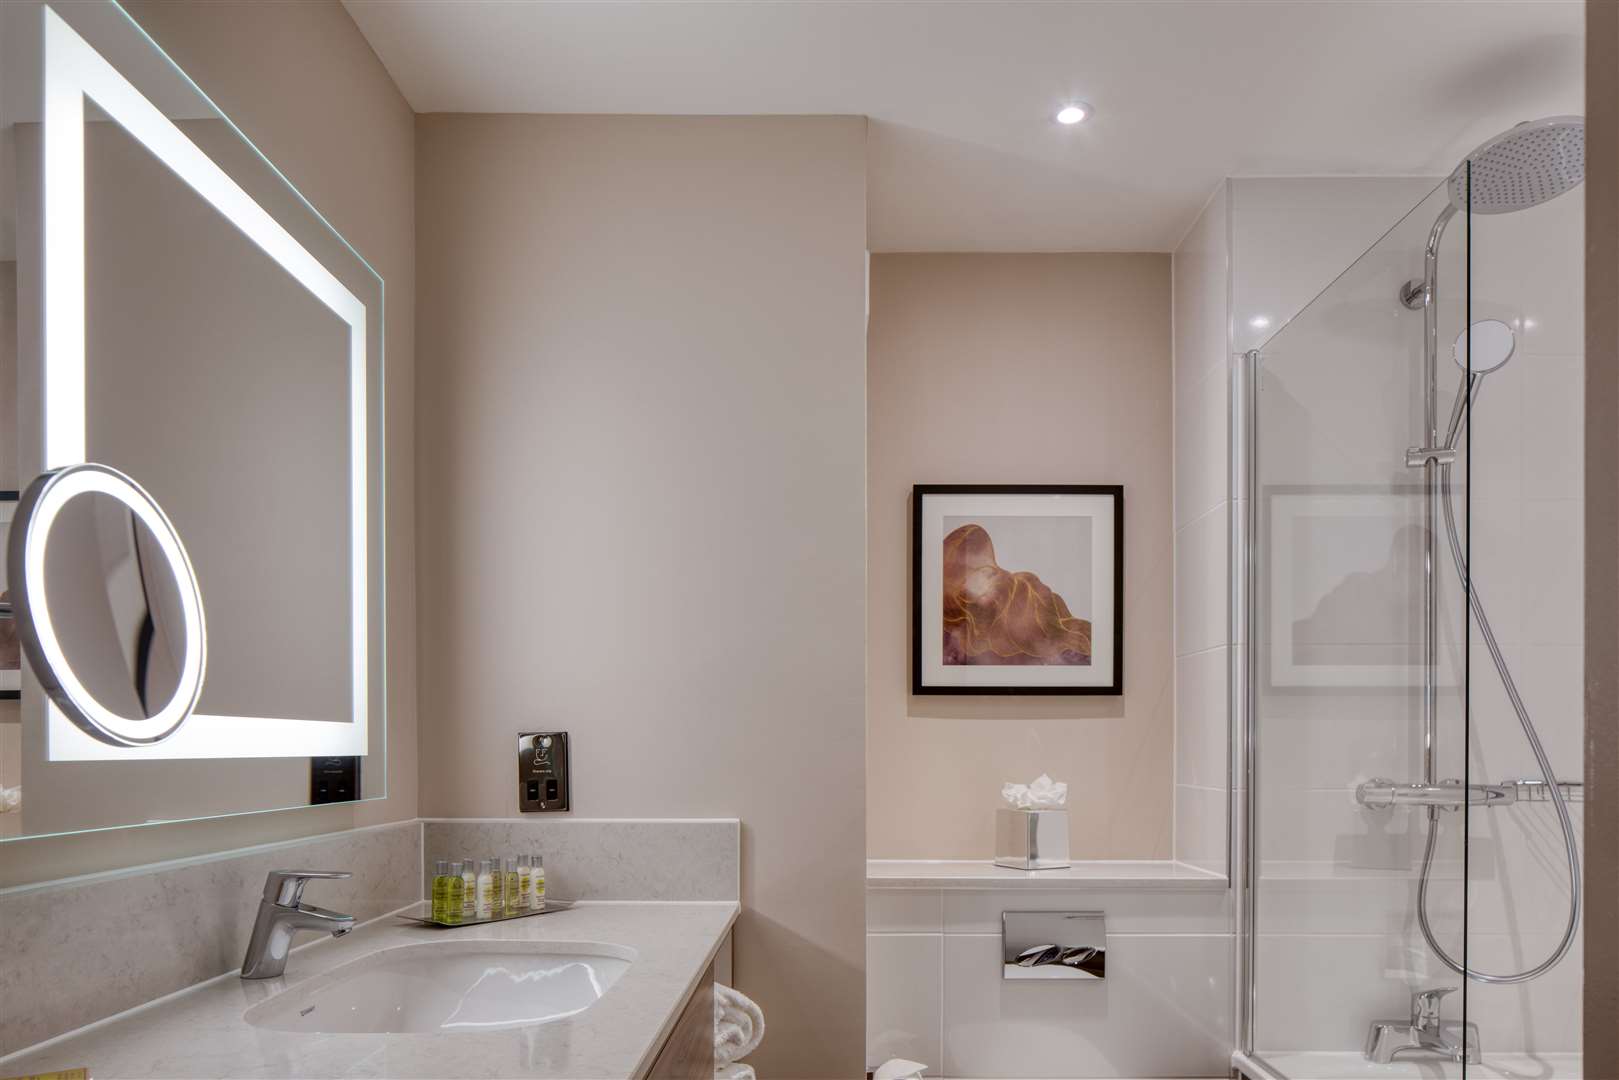 A newly refurbished bathroom at DoubleTree by Hilton Dartford Bridge